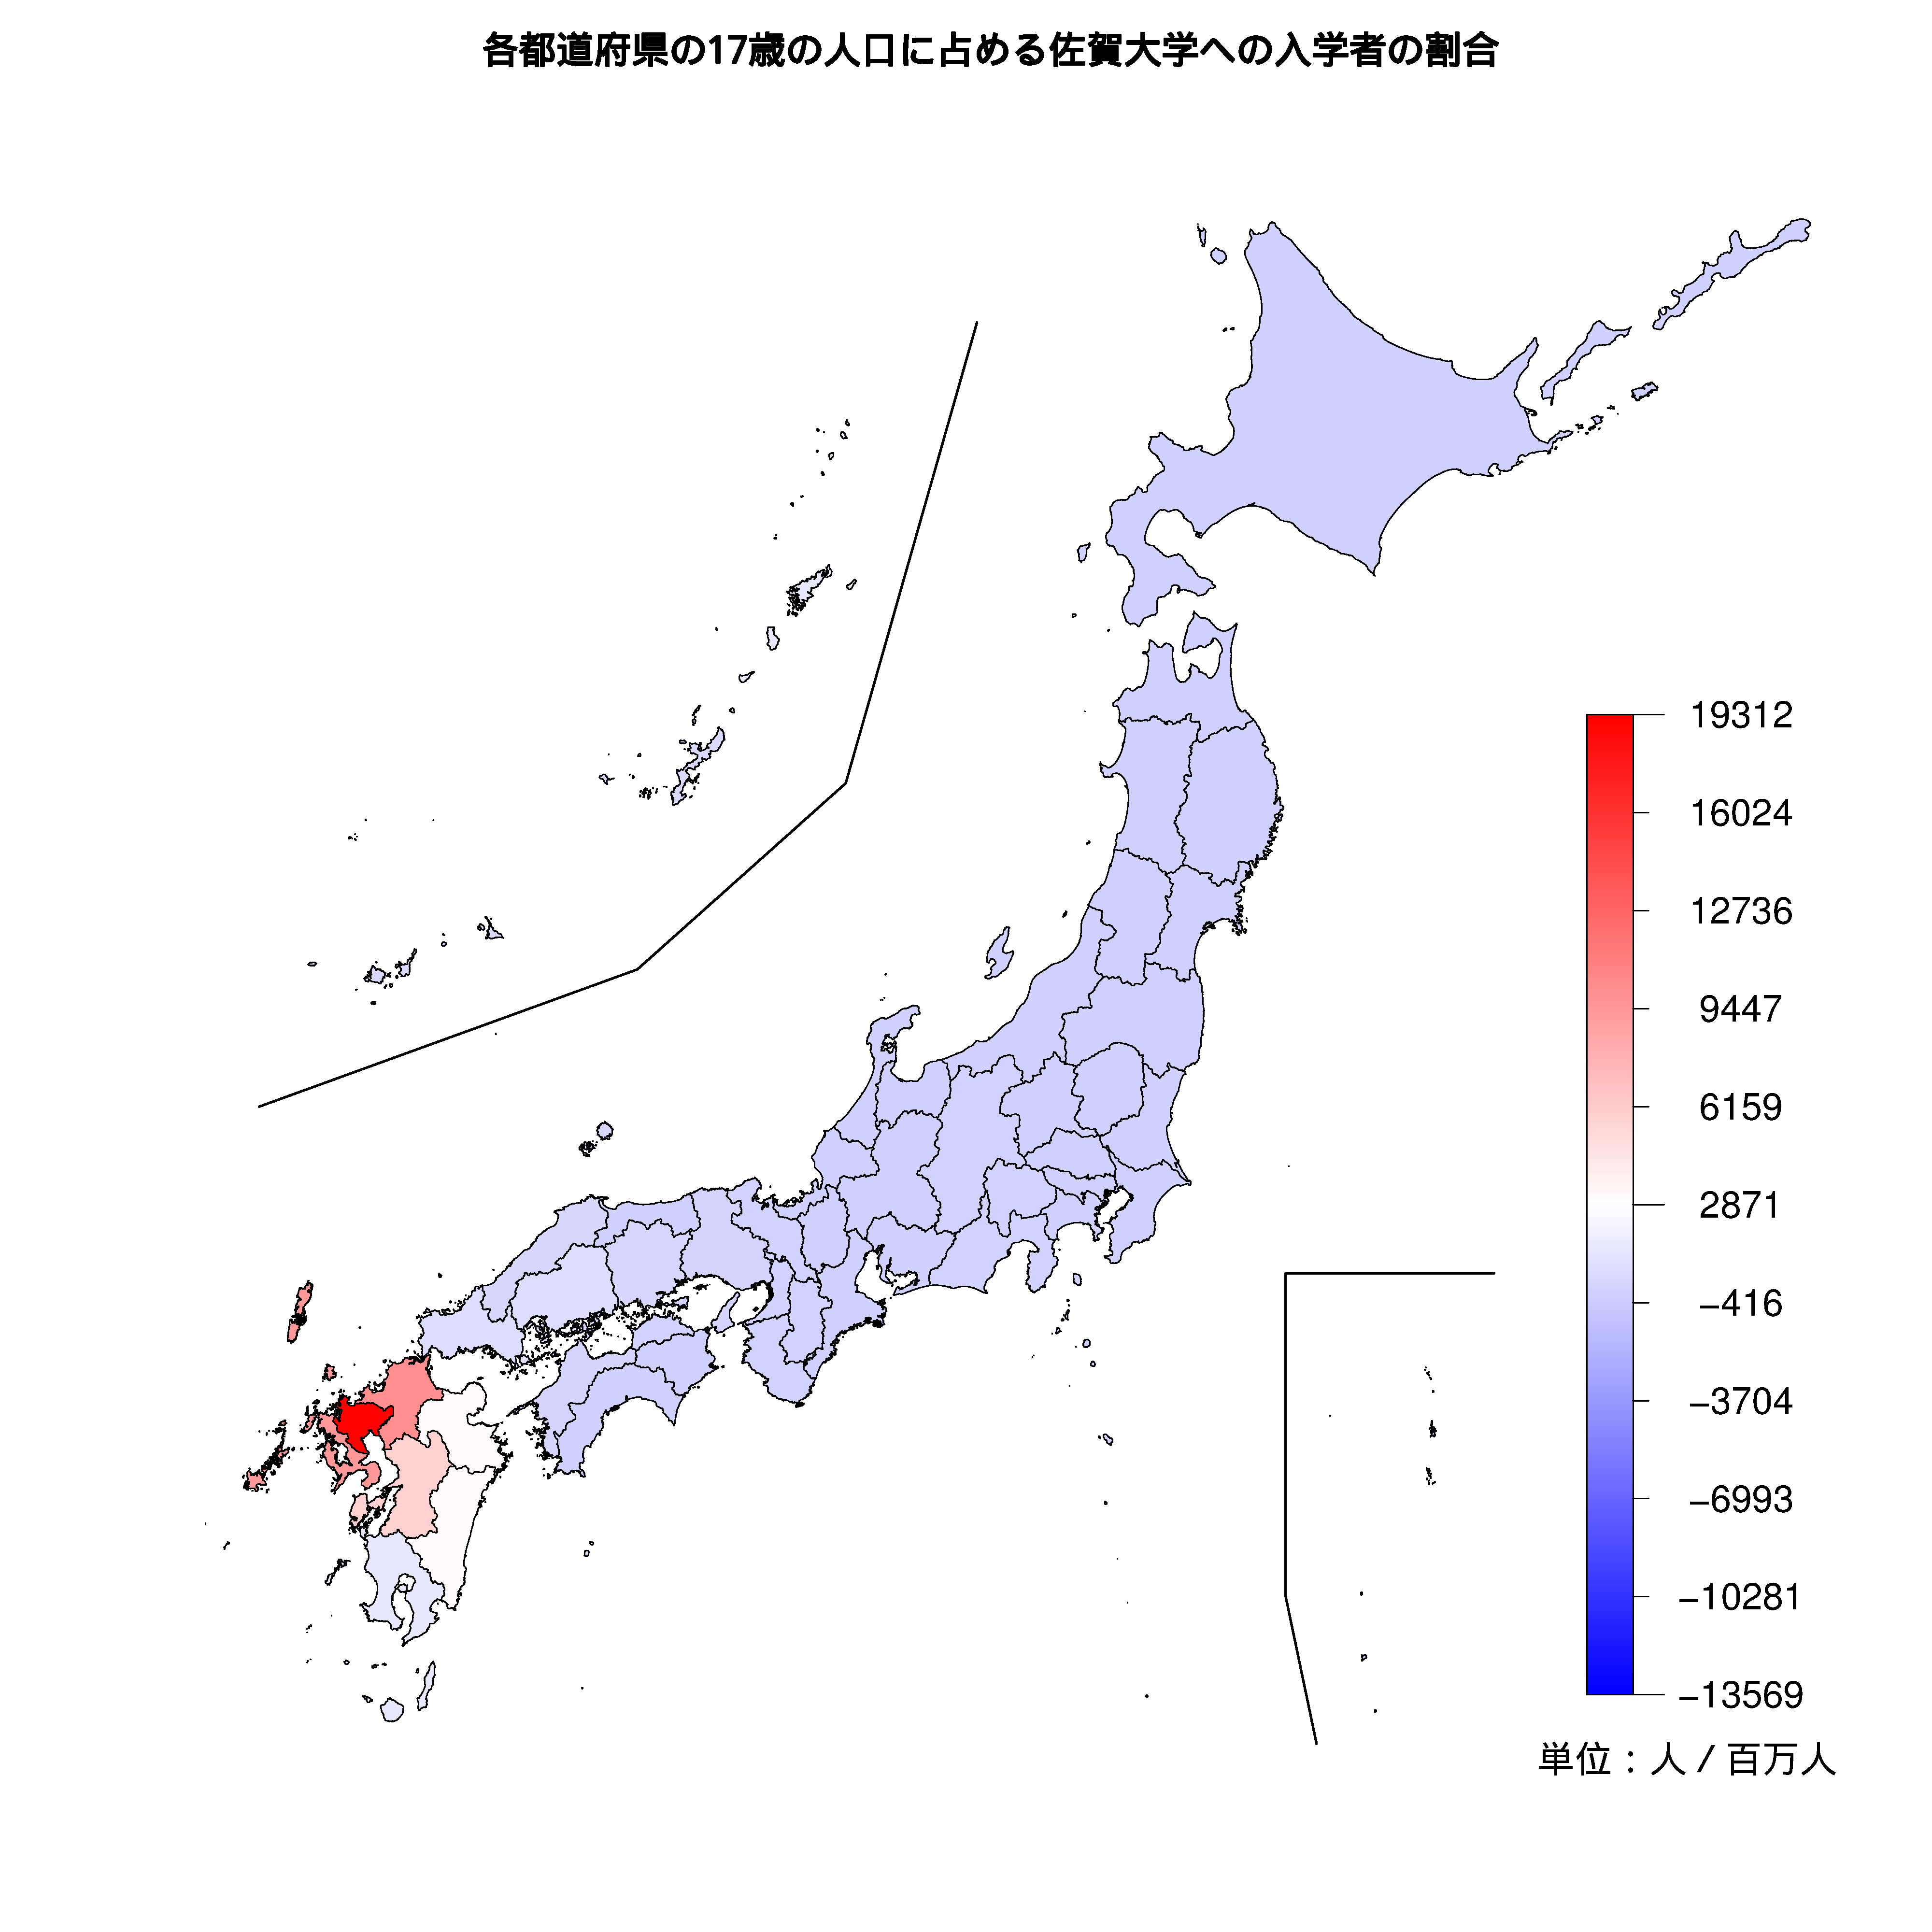 佐賀大学への入学者が多い都道府県の色分け地図